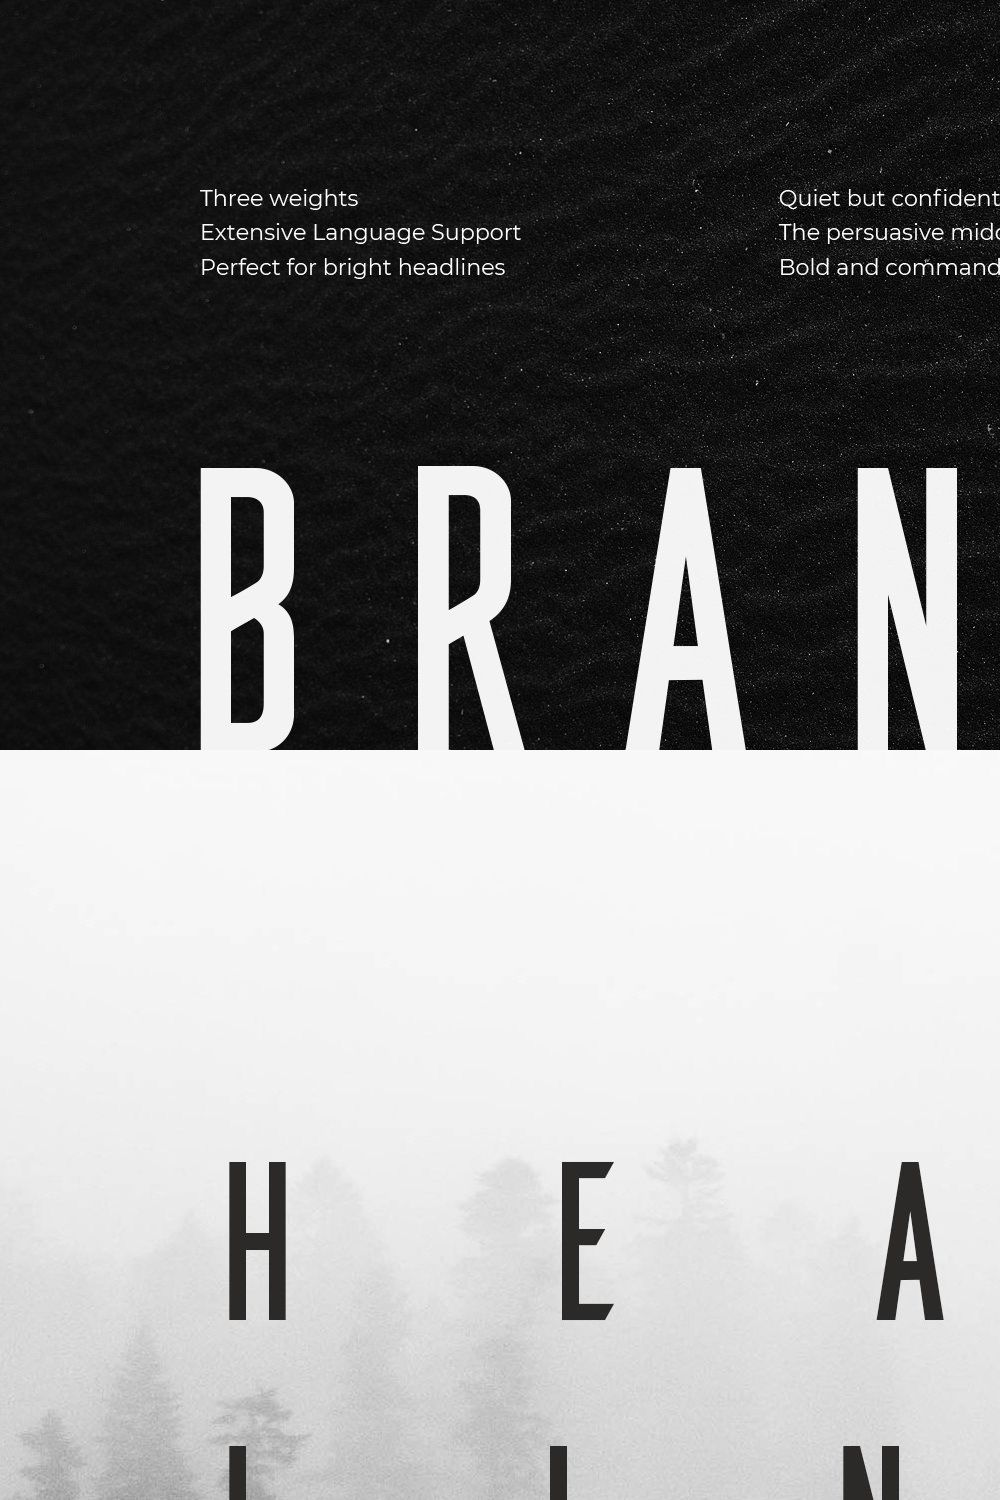 Brandbe — Stylish Sans Serif pinterest preview image.